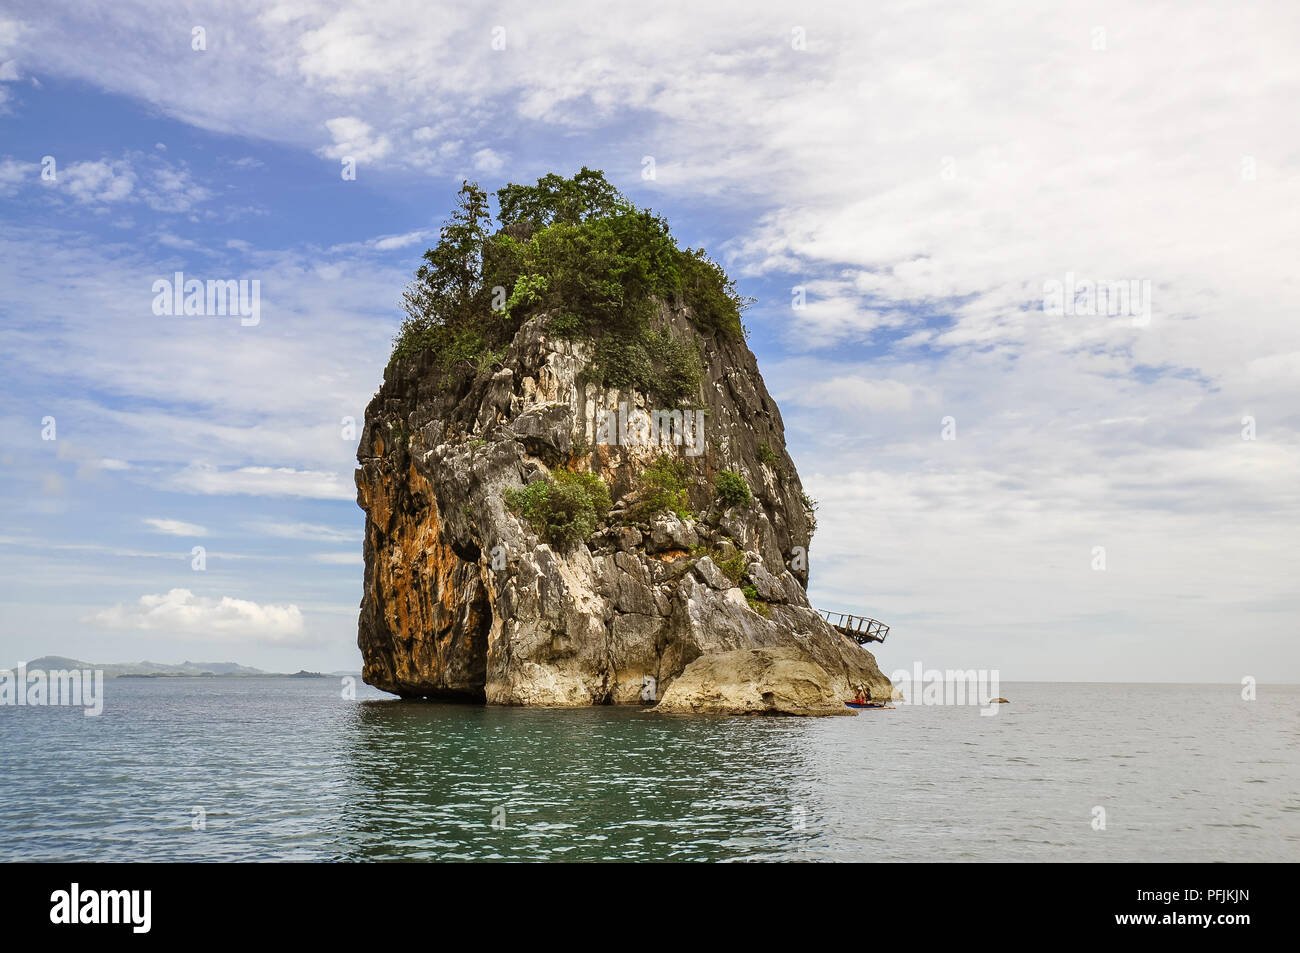 Afloramiento de roca caliza - Caramoan, Camarines Sur, Filipinas Foto de stock